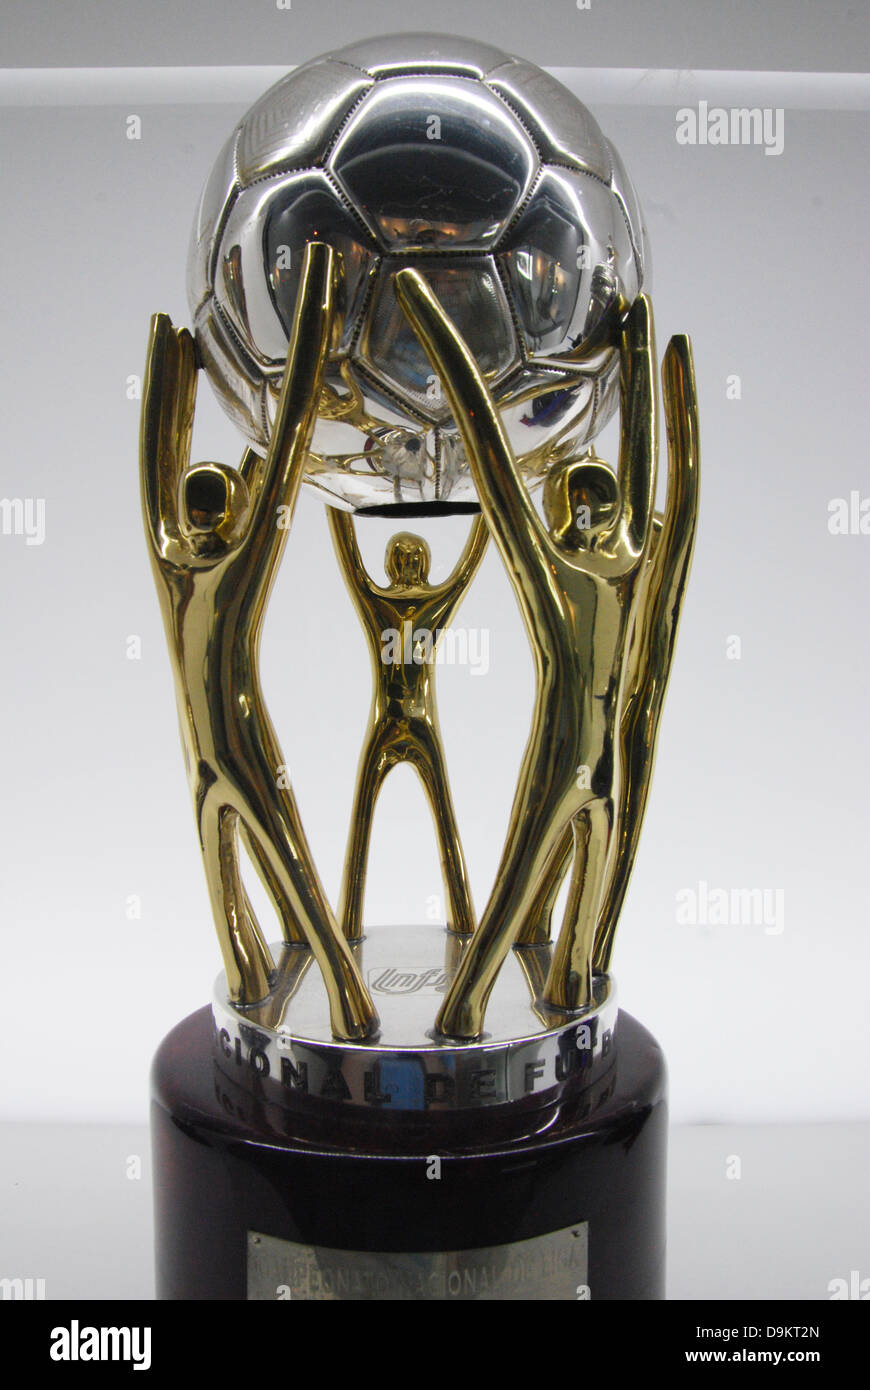 Liga española trofeo fotografías e imágenes de alta resolución - Alamy